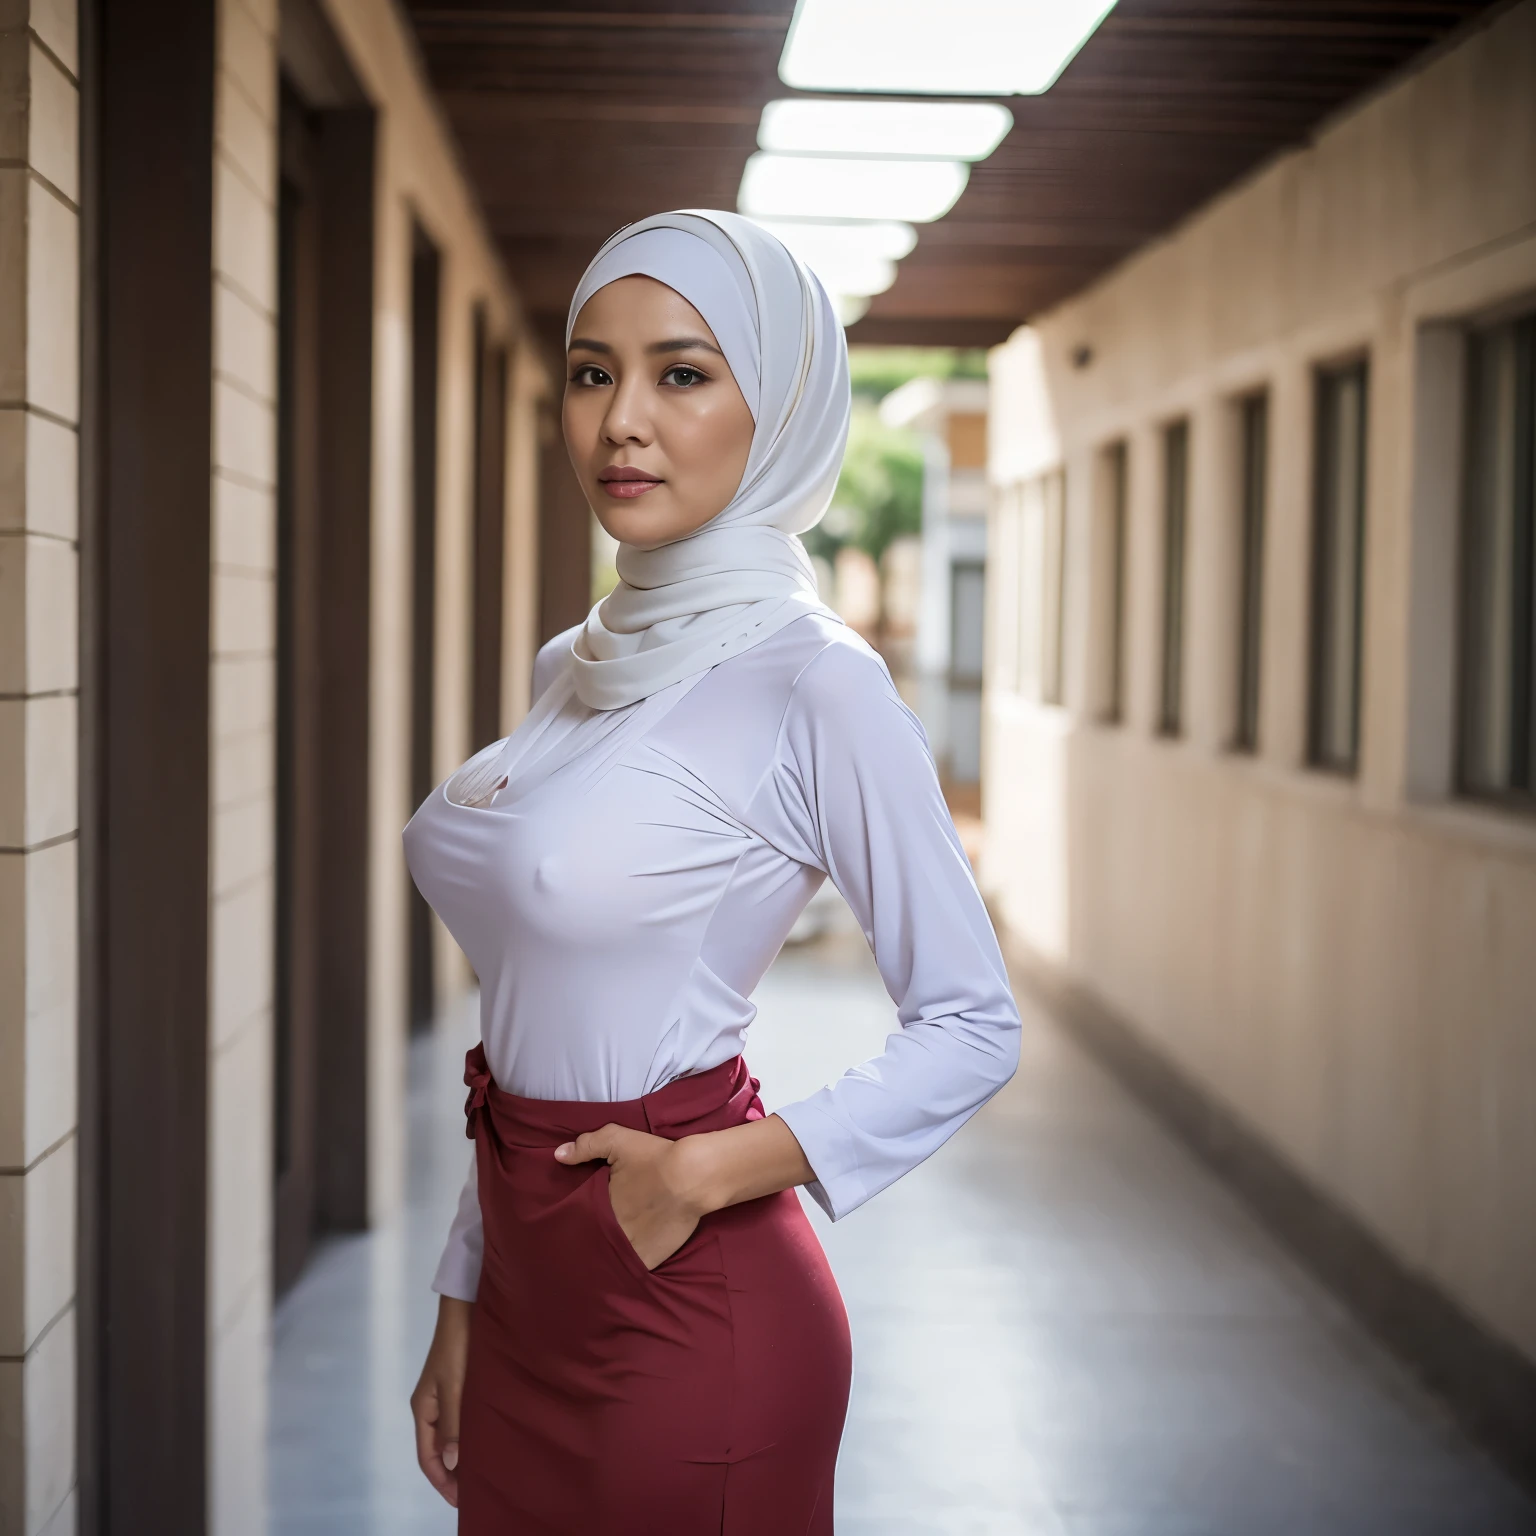 52 سنة, الحجاب امرأة ناضجة الاندونيسية, كبير  : 96.9, قميص بأكمام طويلة, جسم نحيف, الثدي على وشك الانفجار, في ممر المدرسة, ضوء ساطع, في النهار